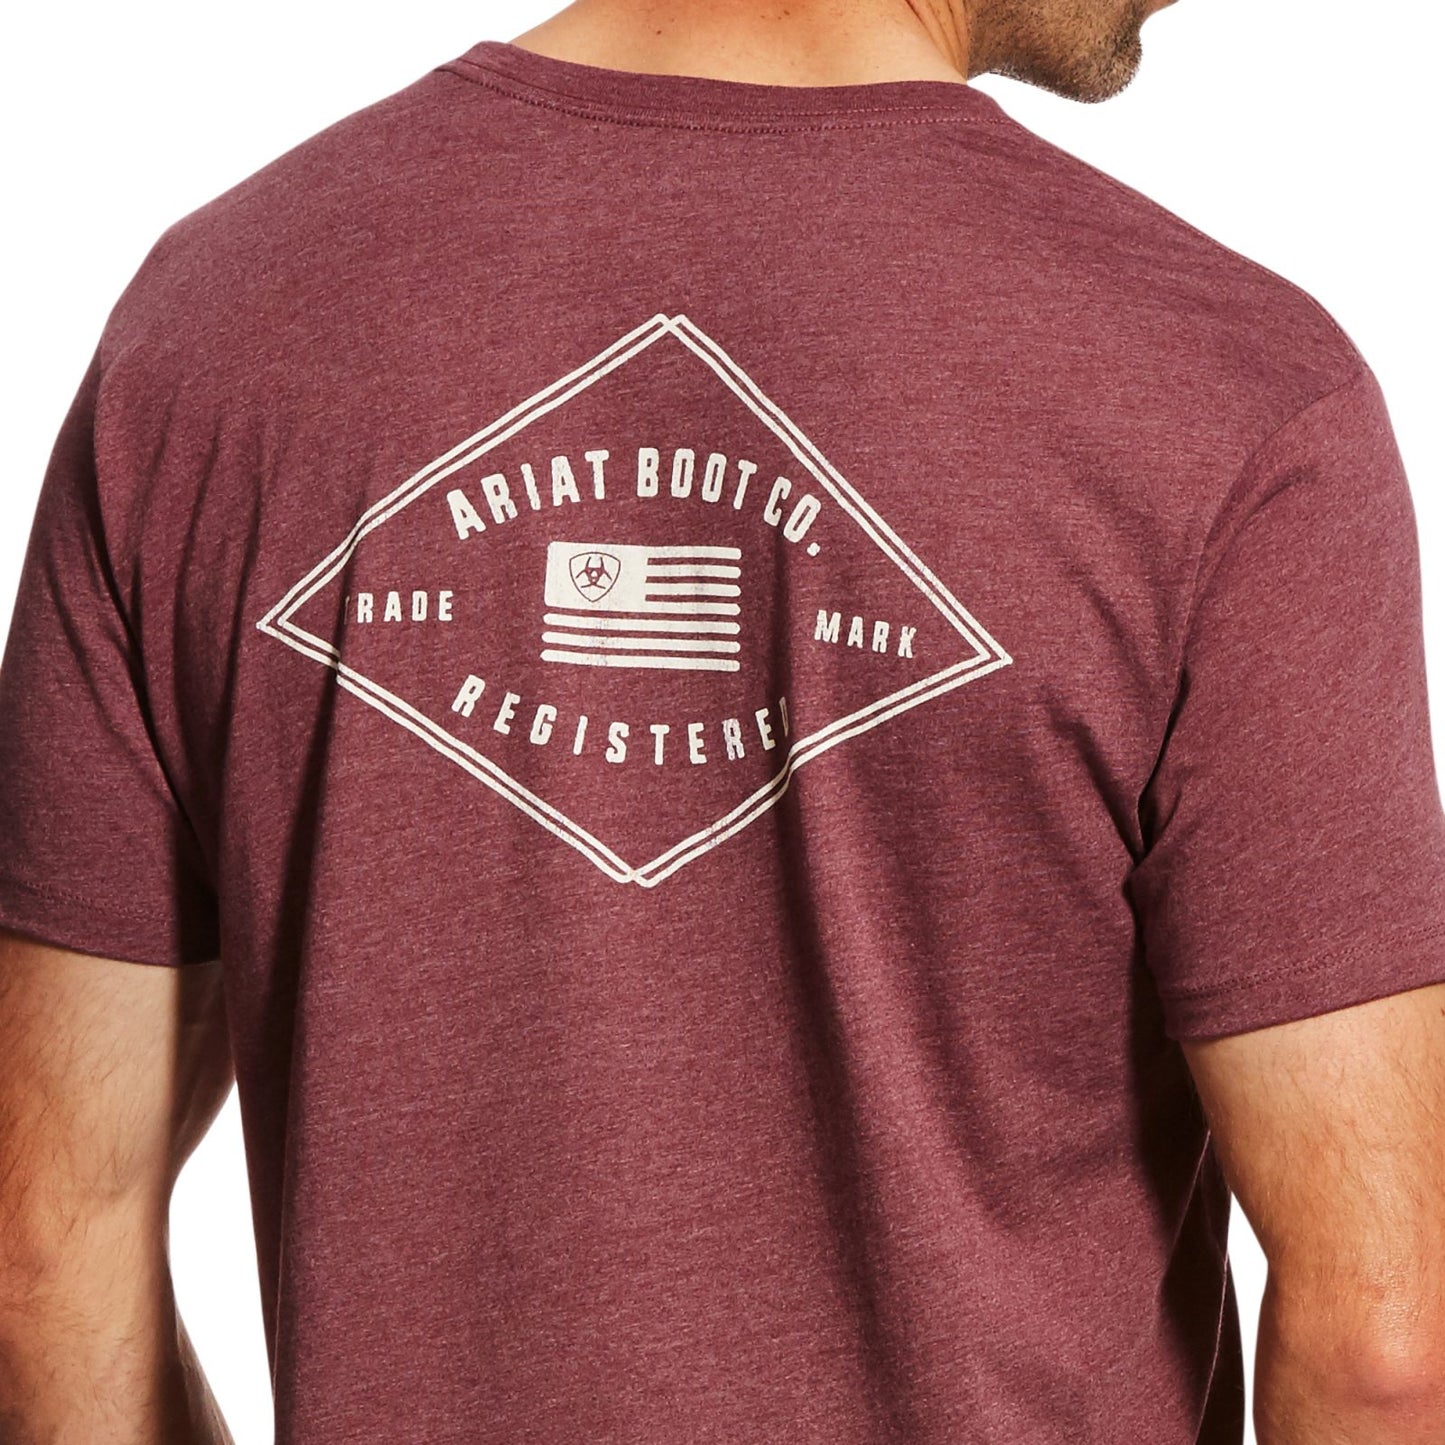 Ariat camiseta borgoña jaspeada registrada en EE. UU.